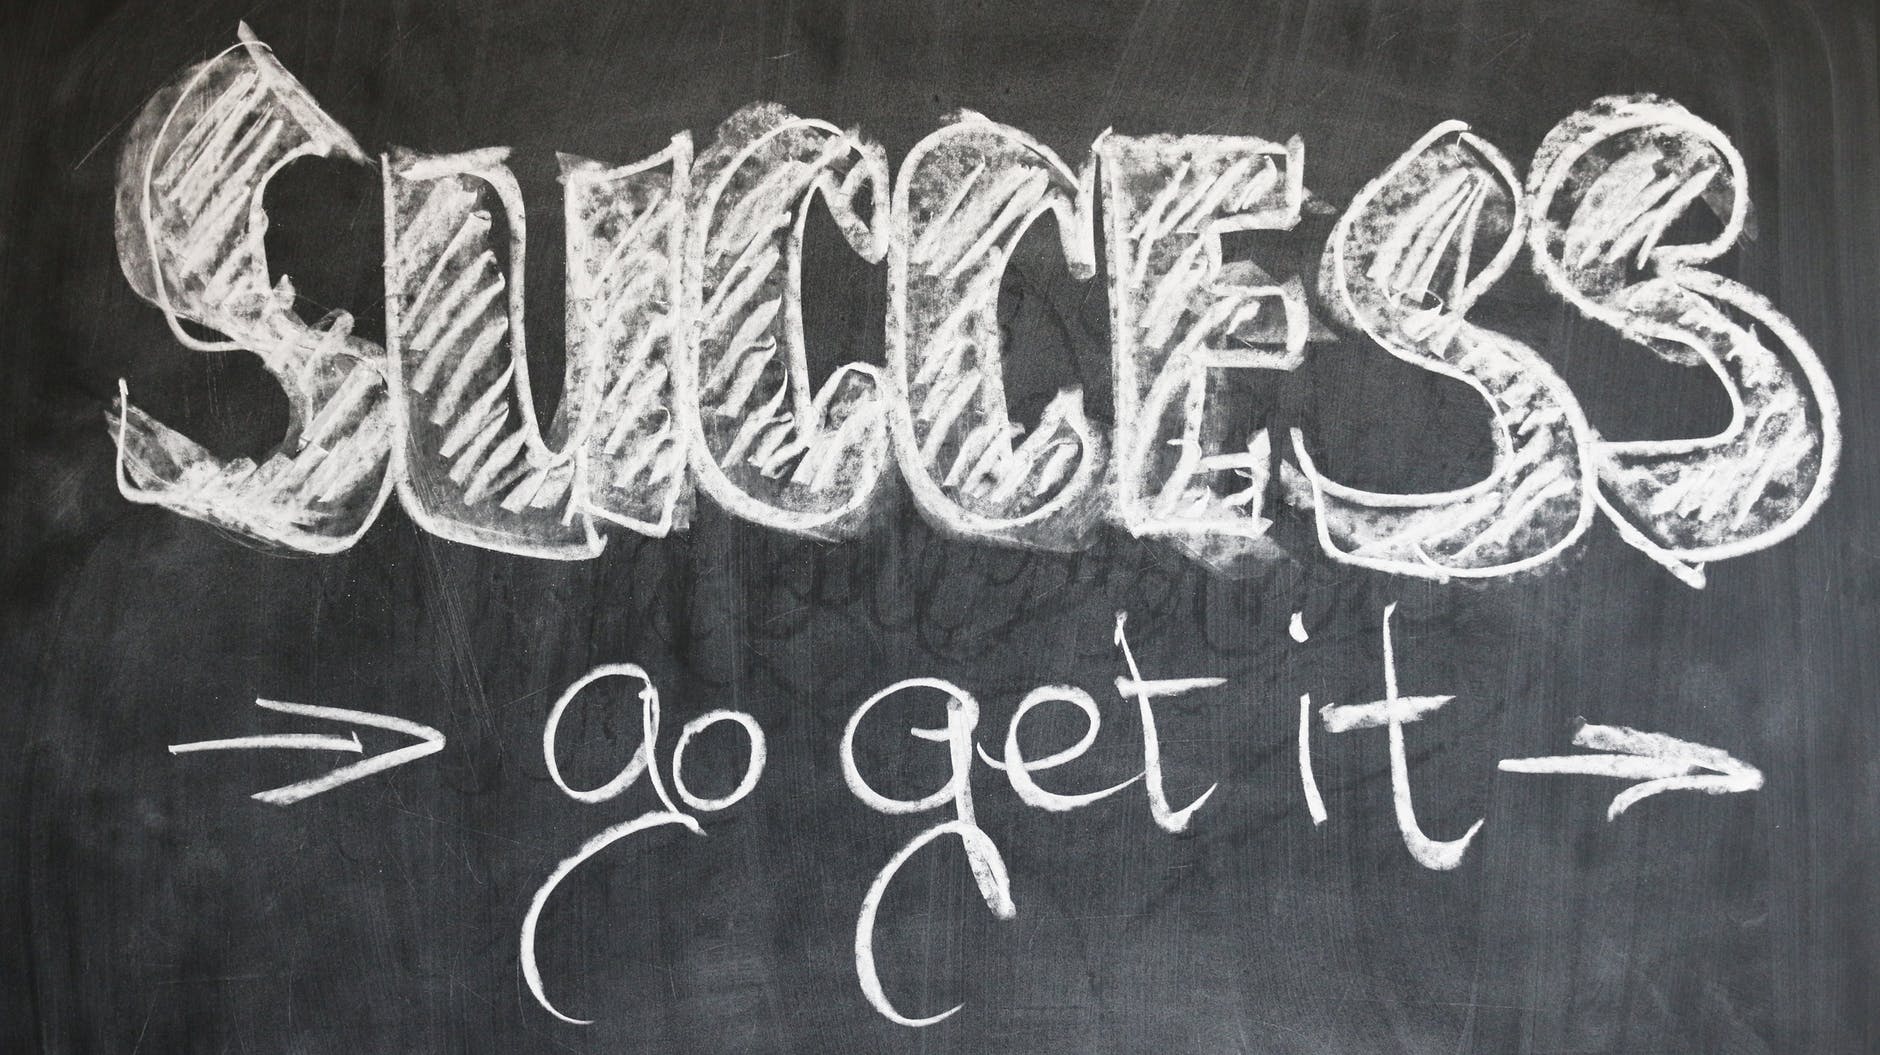 'Success go get it' written on a chalkboard